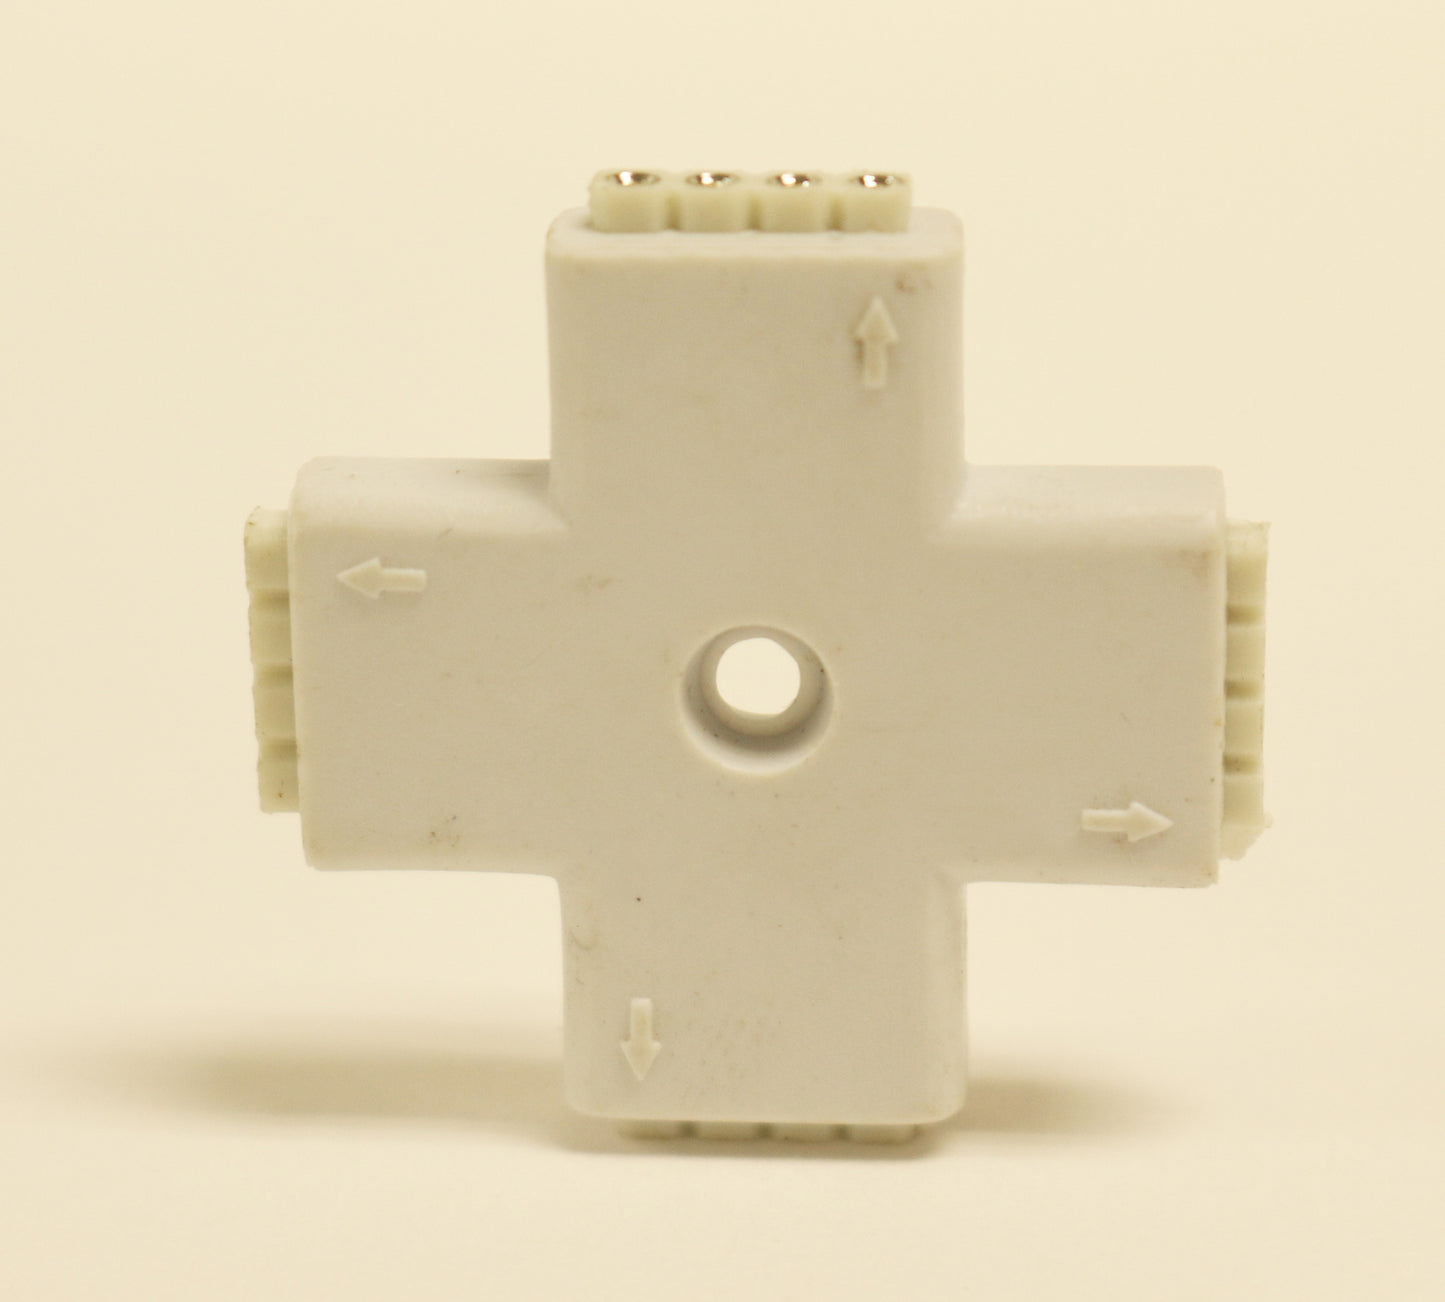 Strip Light Connector (Cross-shaped) Female 4-pin Splitter for RGB LED Strip Lights